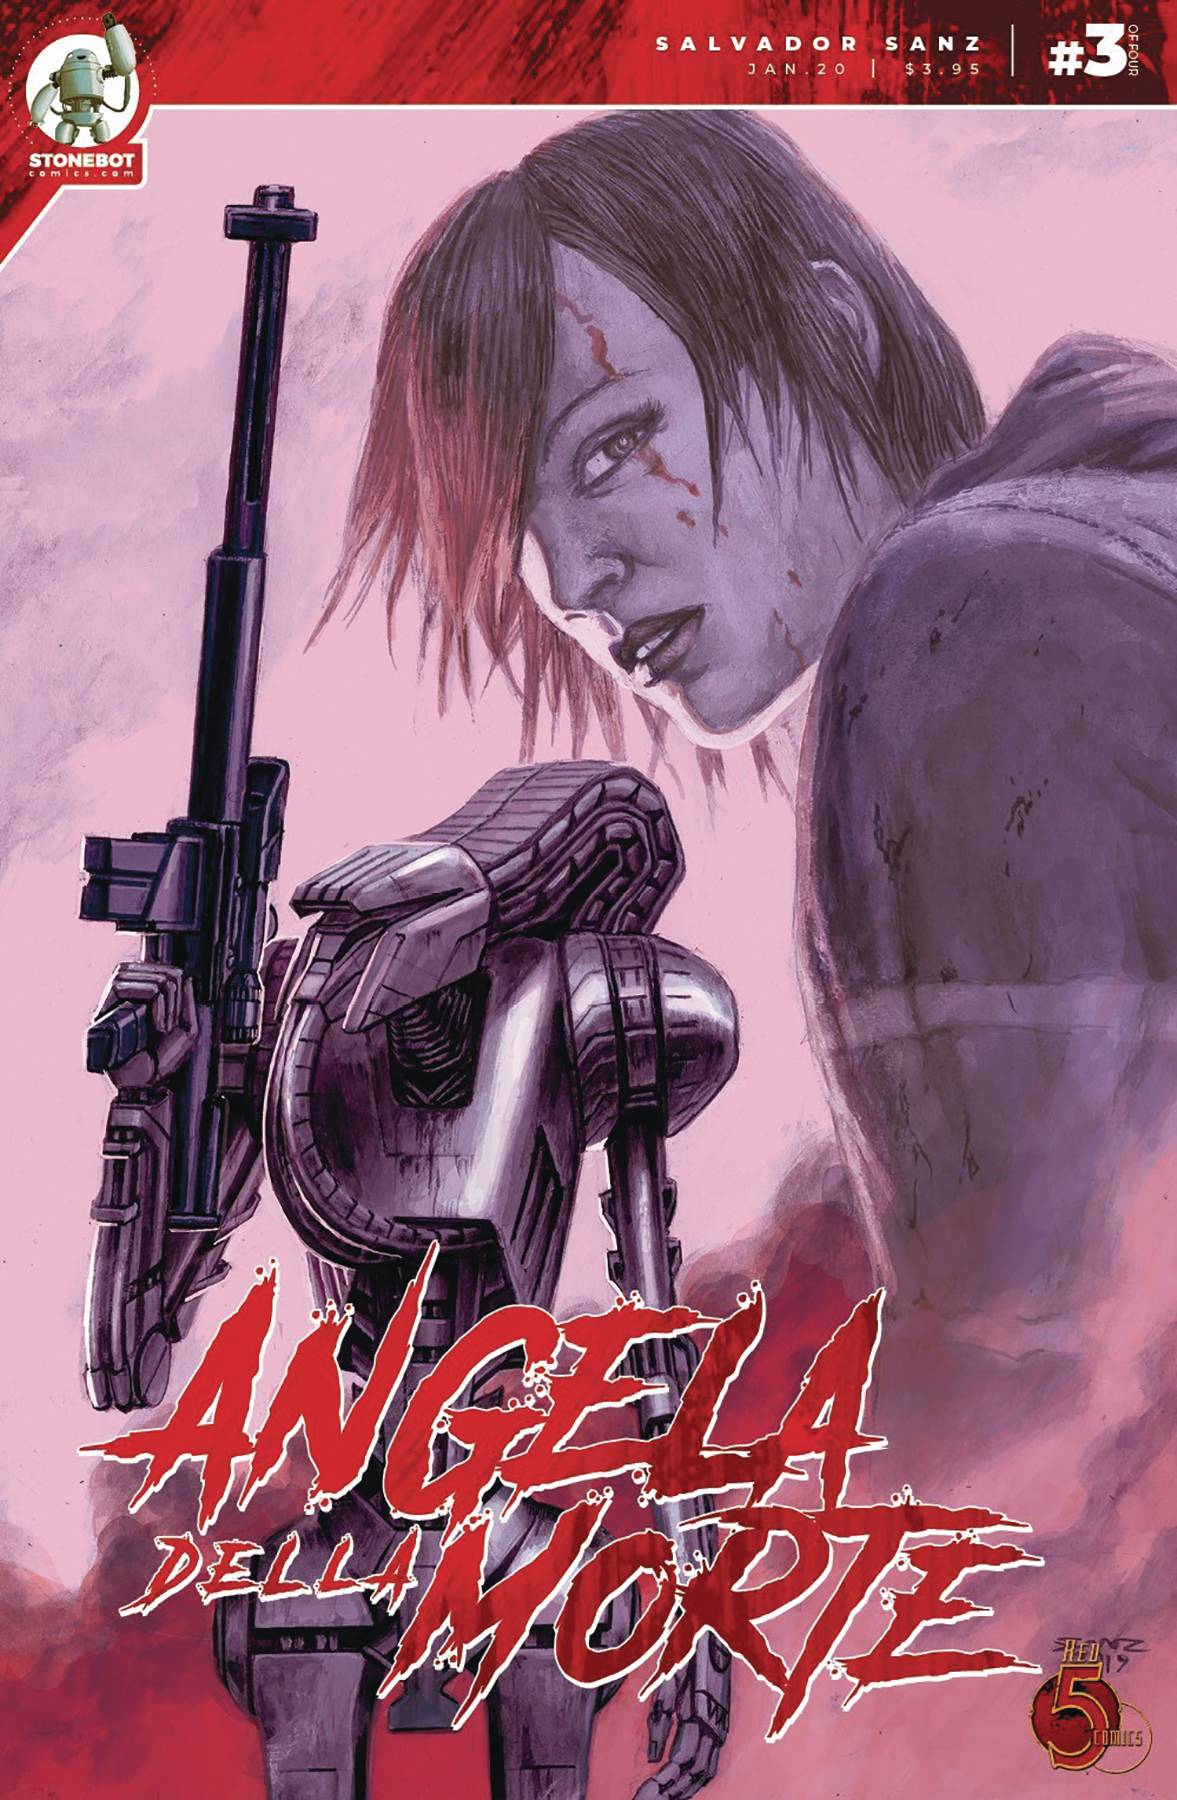 Angela Della Morte #3 (2020)